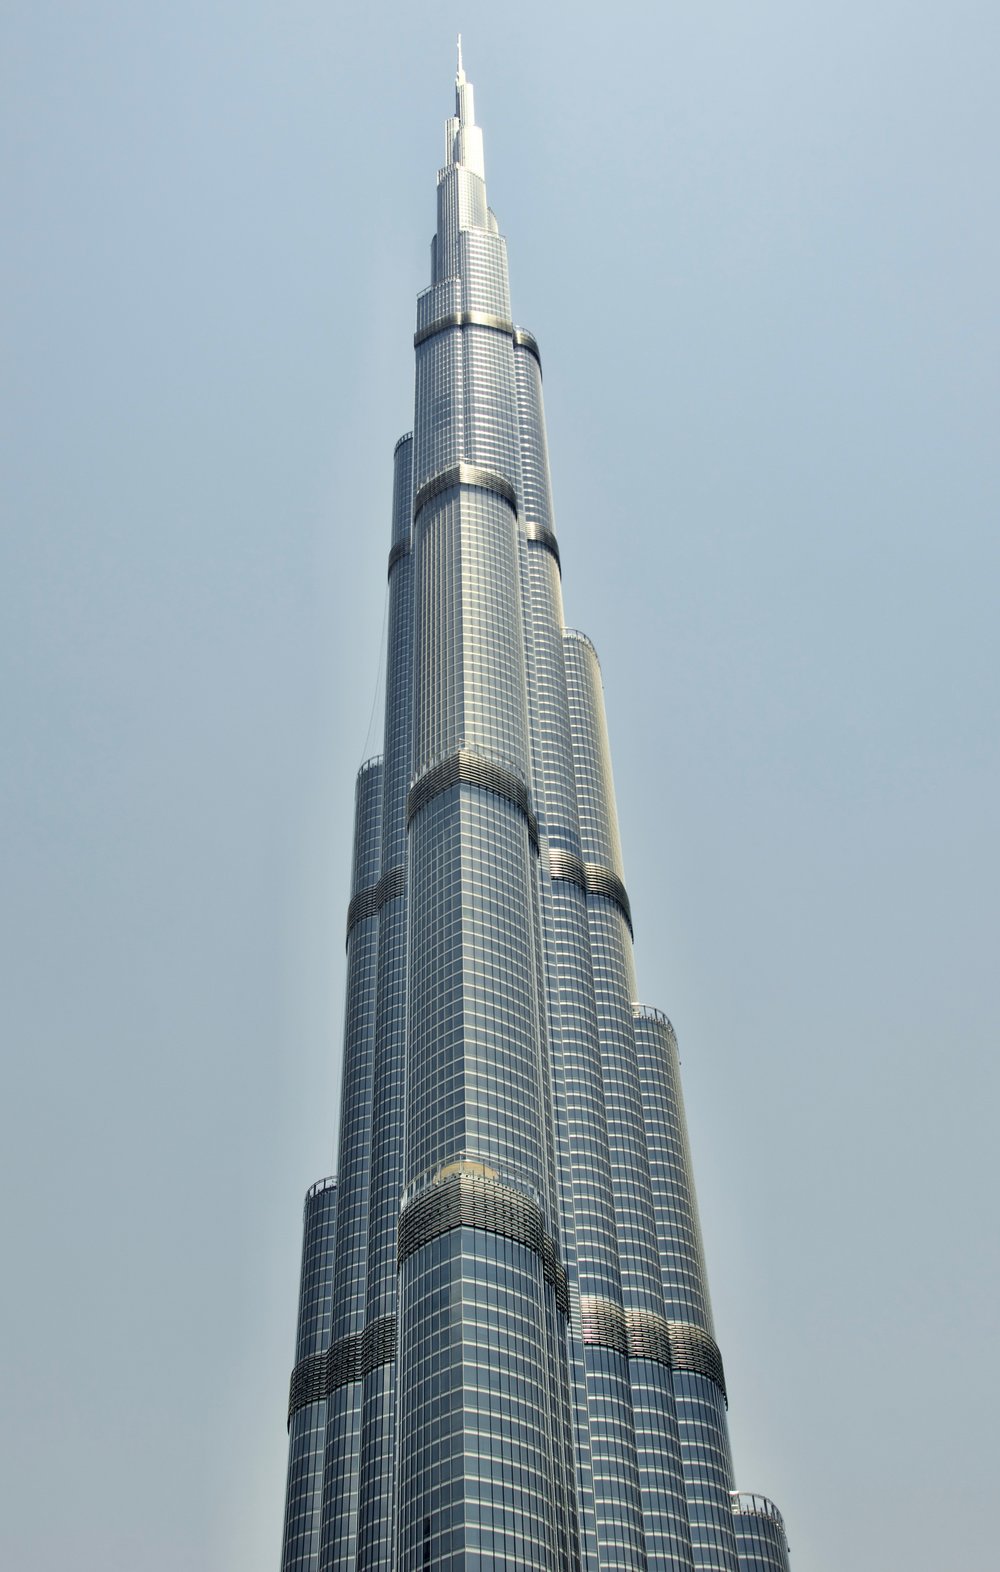  Burj Kalifa at 2,700 feet 